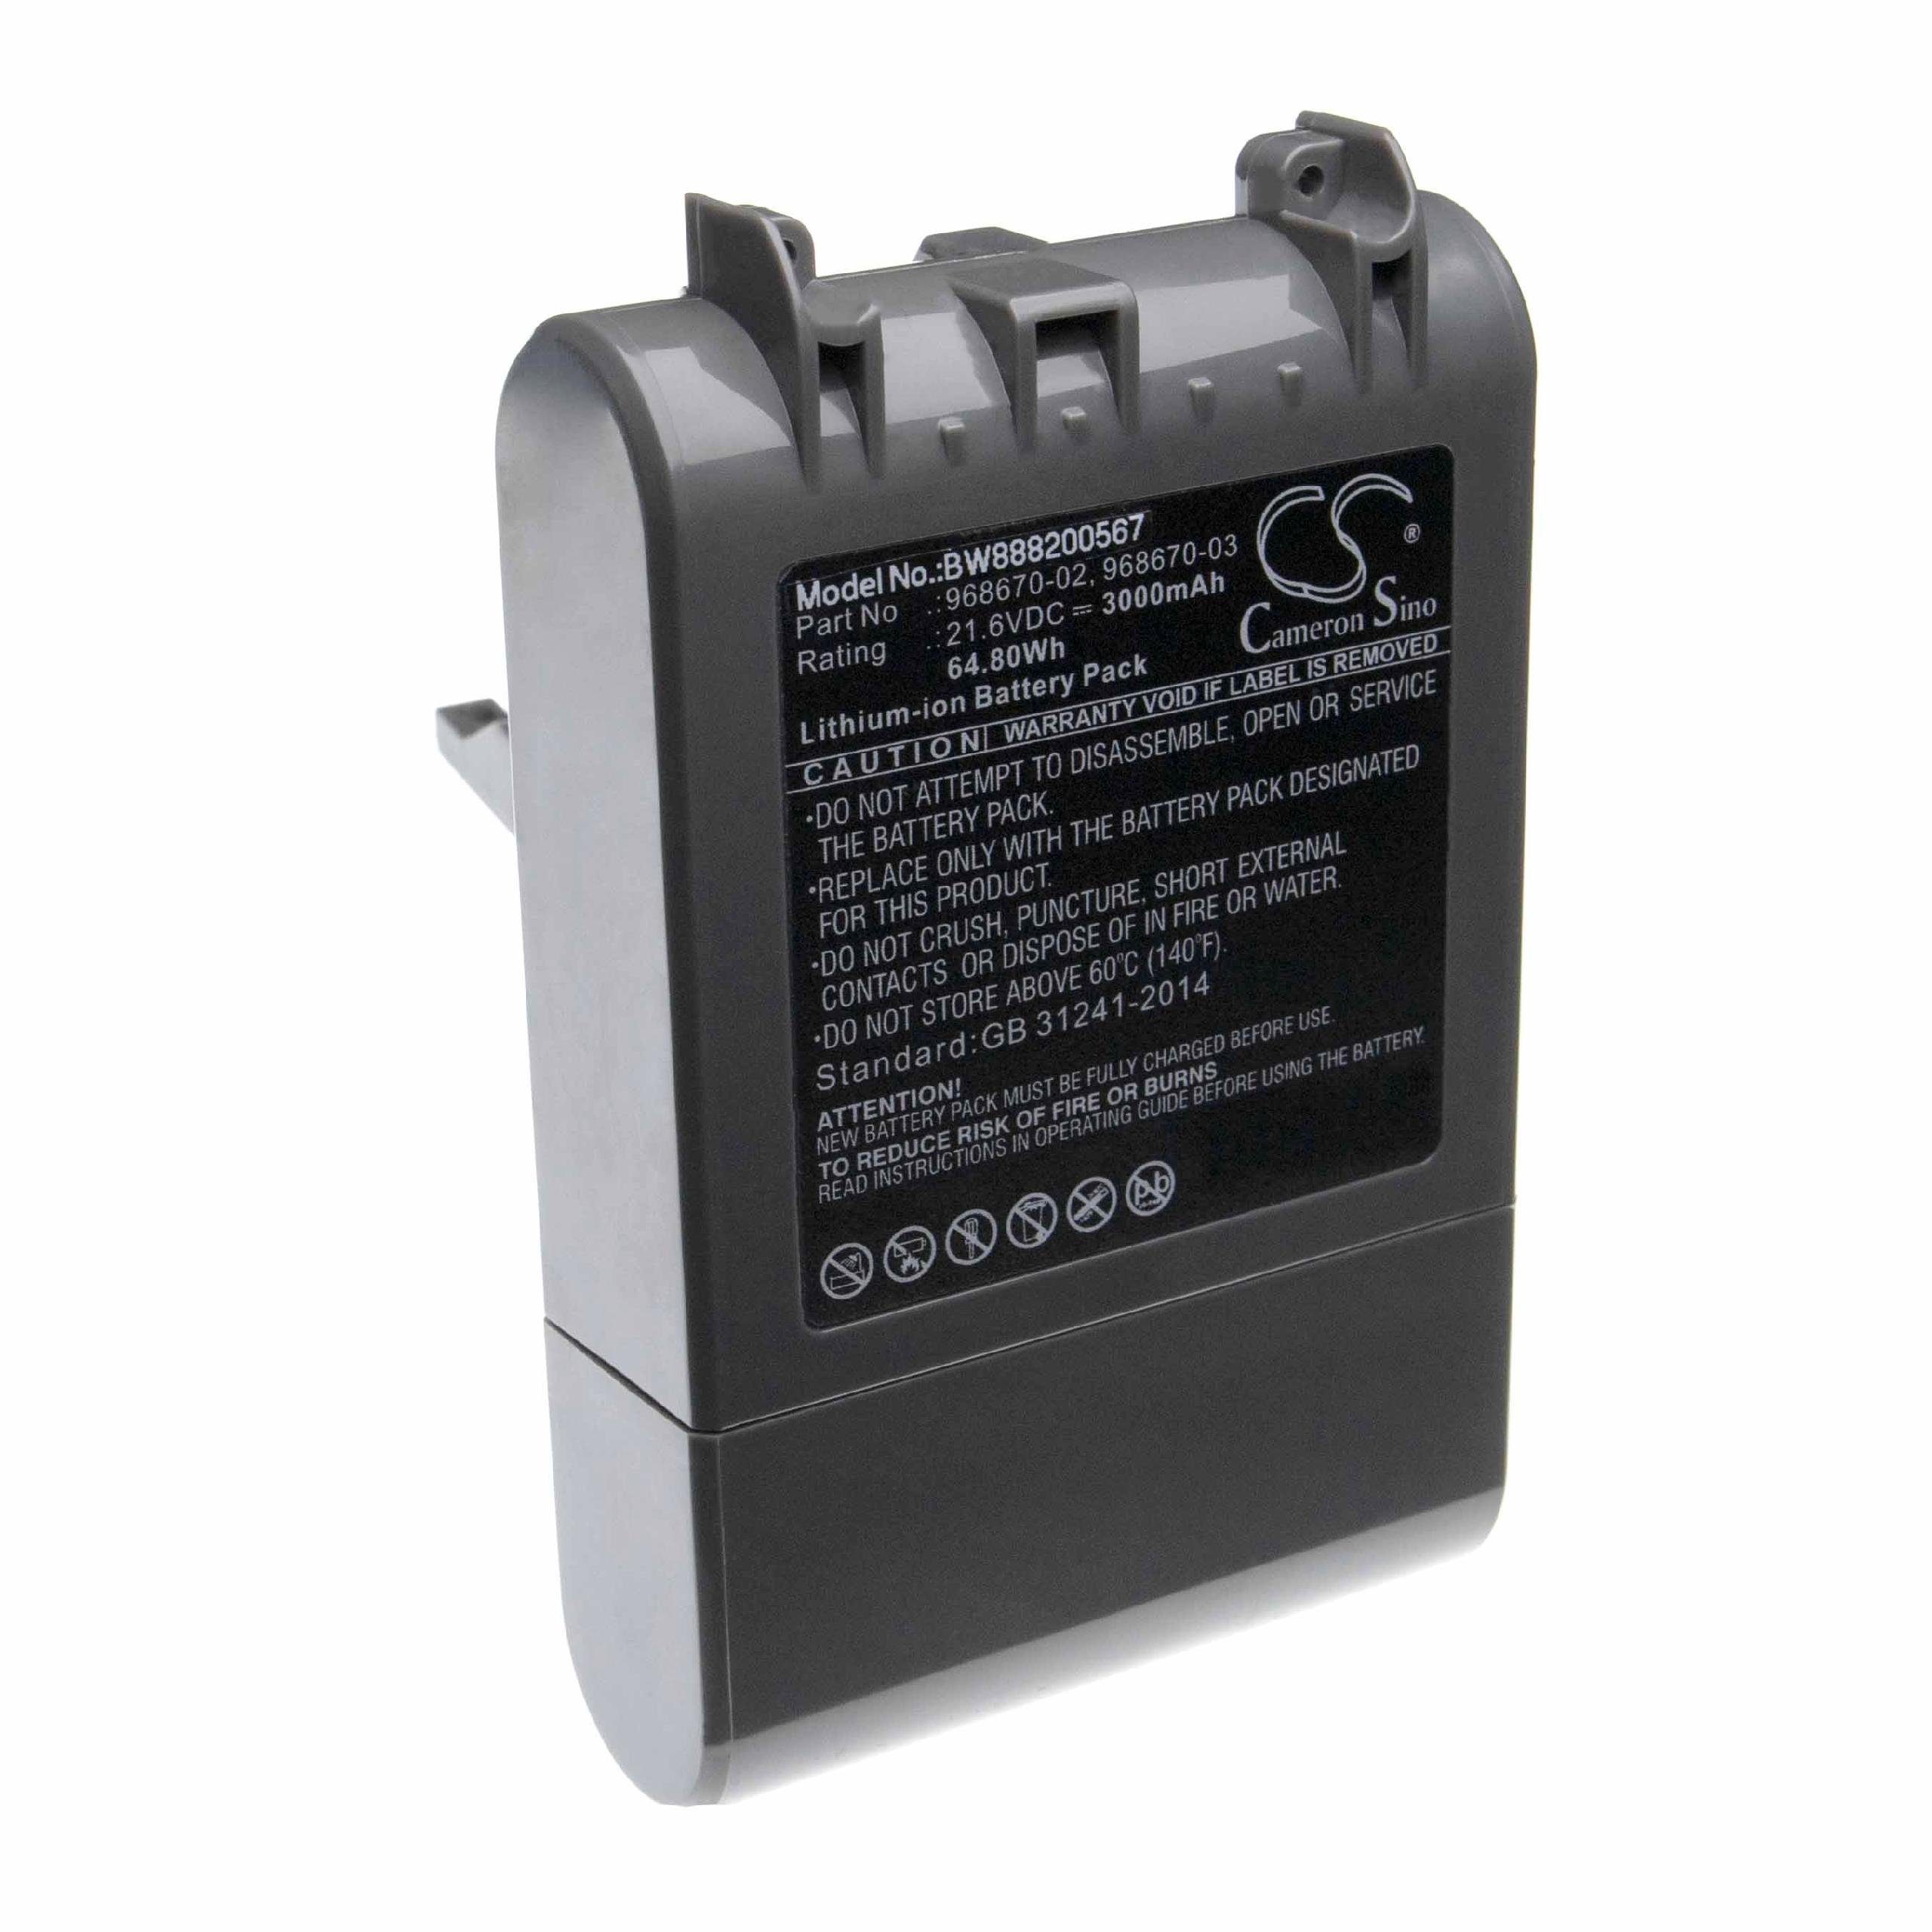 Batteria sostituisce Dyson 968670-03, 968670-02 per aspirapolvere Dyson - 3000mAh 21,6V Li-Ion grigio